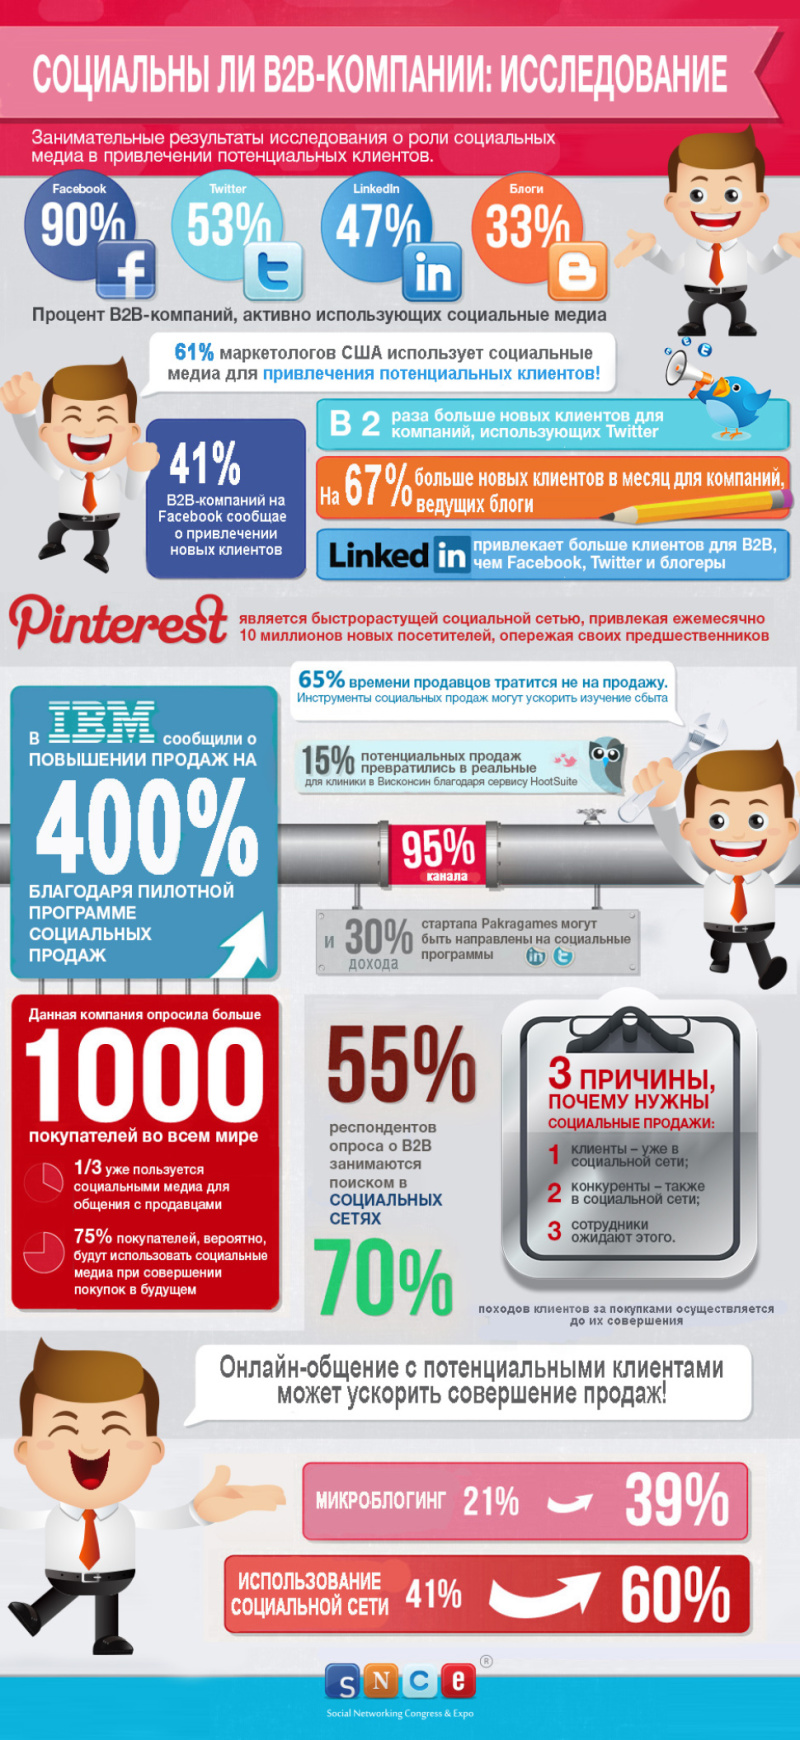 Социальны ли B2B-компании: исследование. Инфографика.